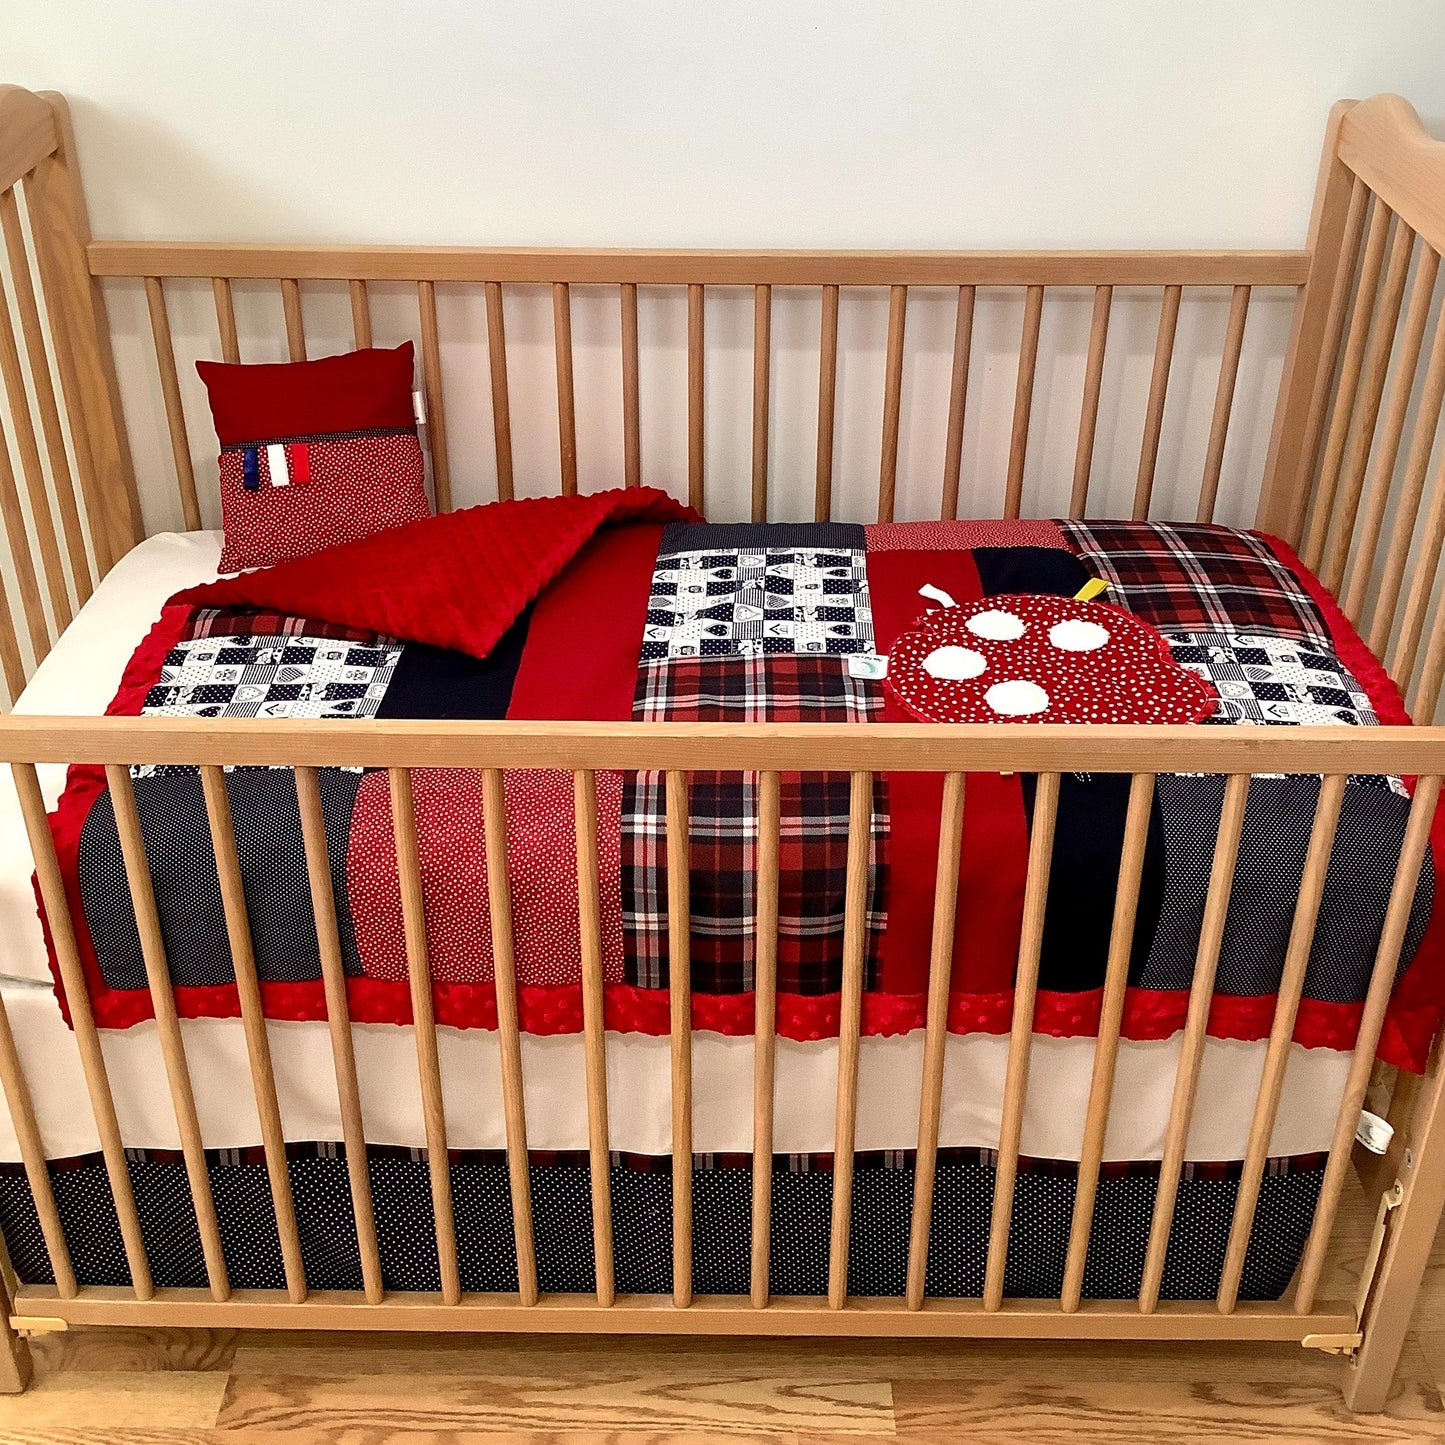 Un joli ensemble 3 morceaux pour le berceau de bébé. Avec de belles couleurs vives, cet ensemble en coton sur le dessus et en Minky en dessous. L'ensemble comprend la douillette, le drap contour et la jupe de lit assortie.   Chaque morceau est fait au Québec et est unique.